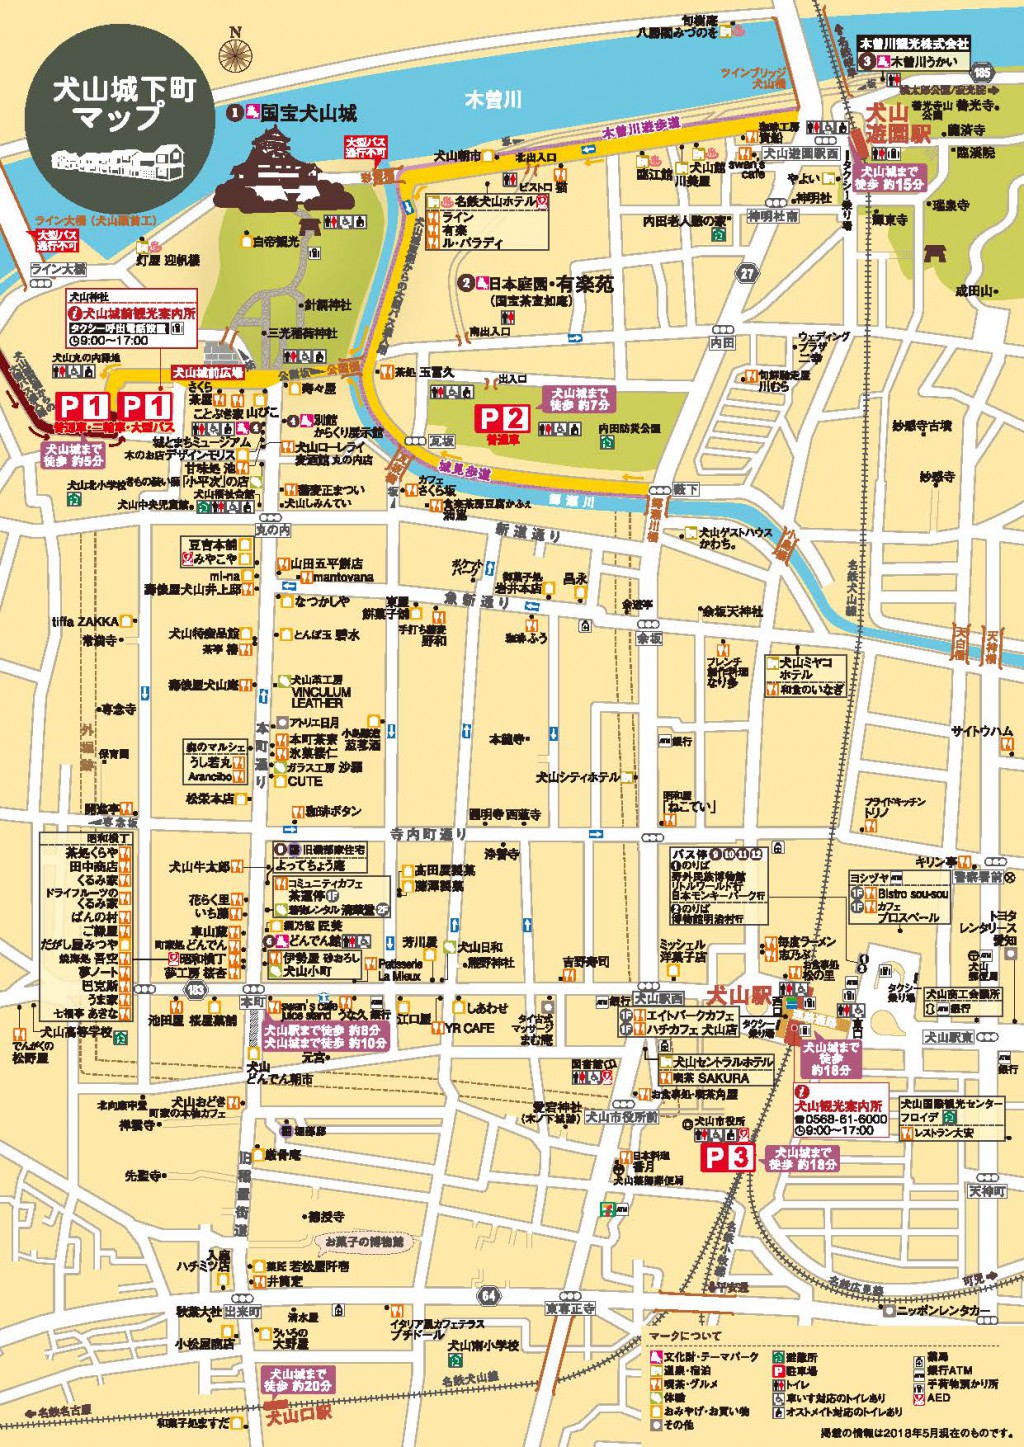 マップ&パンフレット « 犬山観光情報